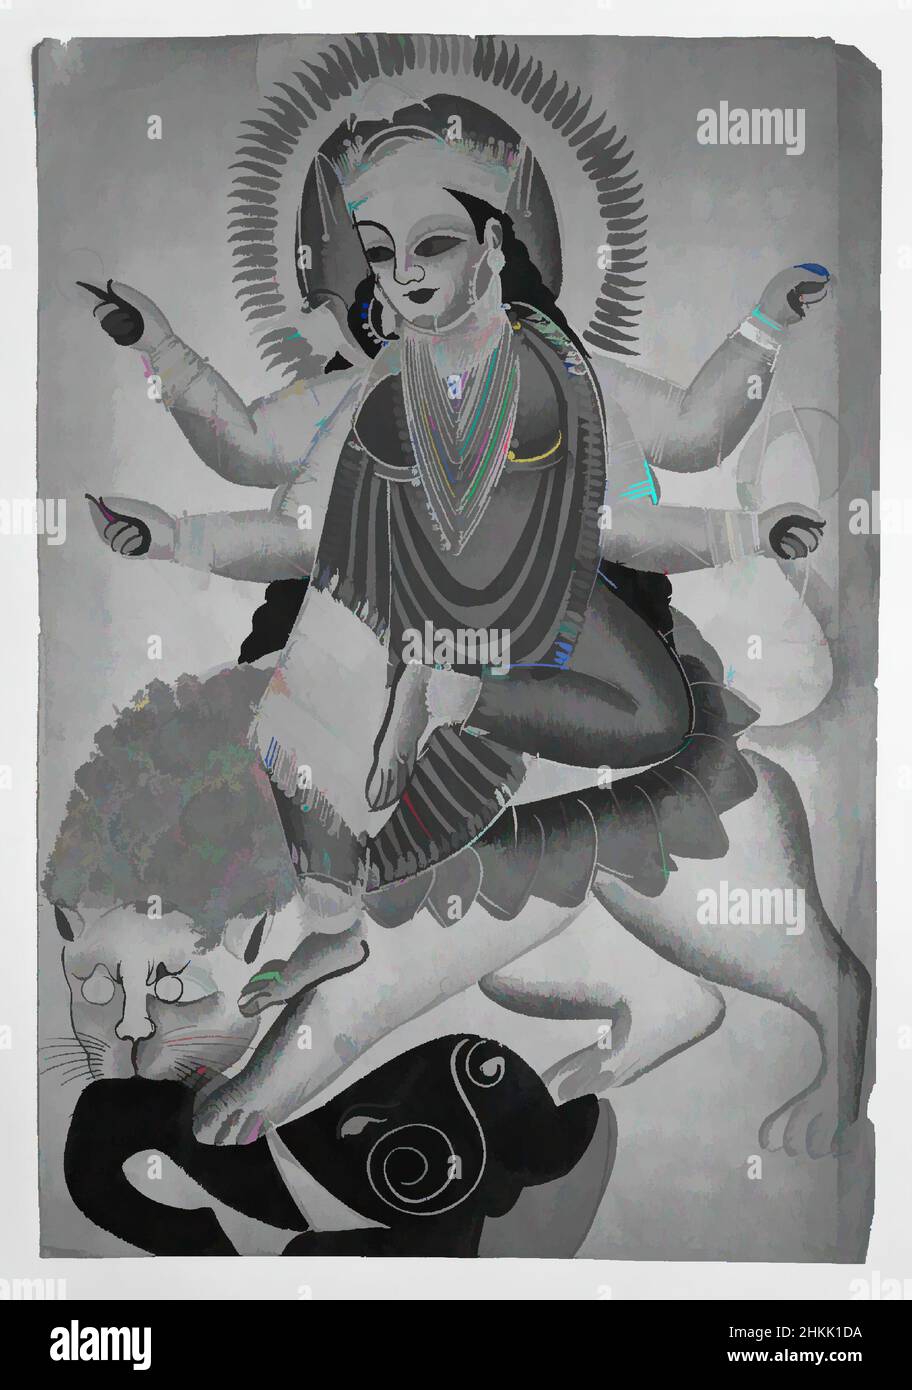 Art inspiré par la déesse Durga Astaride a Lion, aquarelles sur papier avec des accents d'étain poli, Kolkata, Calcutta, Bengale occidental, Inde, Fin 19th-début 20th siècle, 16 x 11 po., 40,6 x 27,9 cm, œuvres classiques modernisées par Artotop avec une touche de modernité. Formes, couleur et valeur, impact visuel accrocheur sur l'art émotions par la liberté d'œuvres d'art d'une manière contemporaine. Un message intemporel qui cherche une nouvelle direction créative. Artistes qui se tournent vers le support numérique et créent le NFT Artotop Banque D'Images